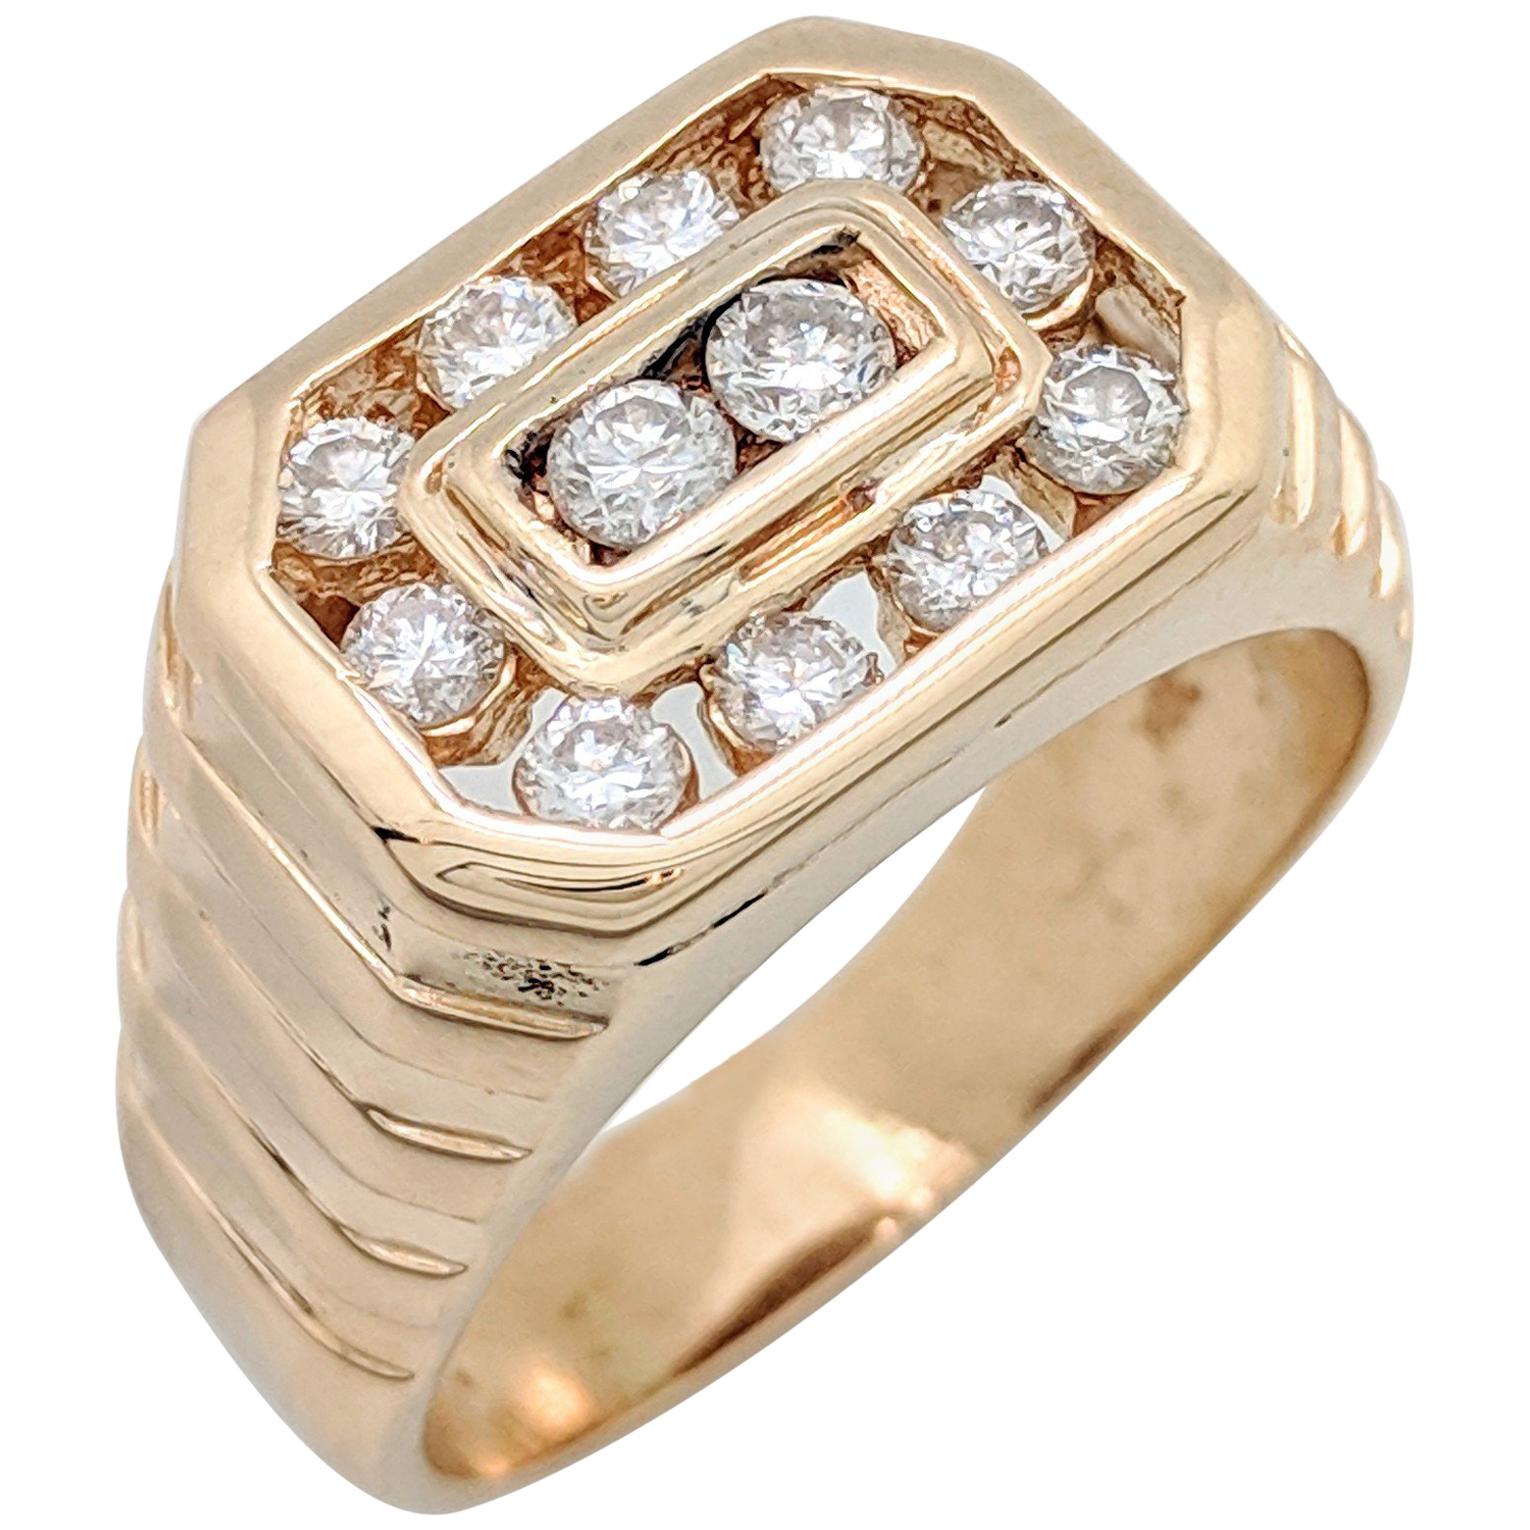 Men's 14 Karat Yellow Gold 1 Carat Diamond Ring